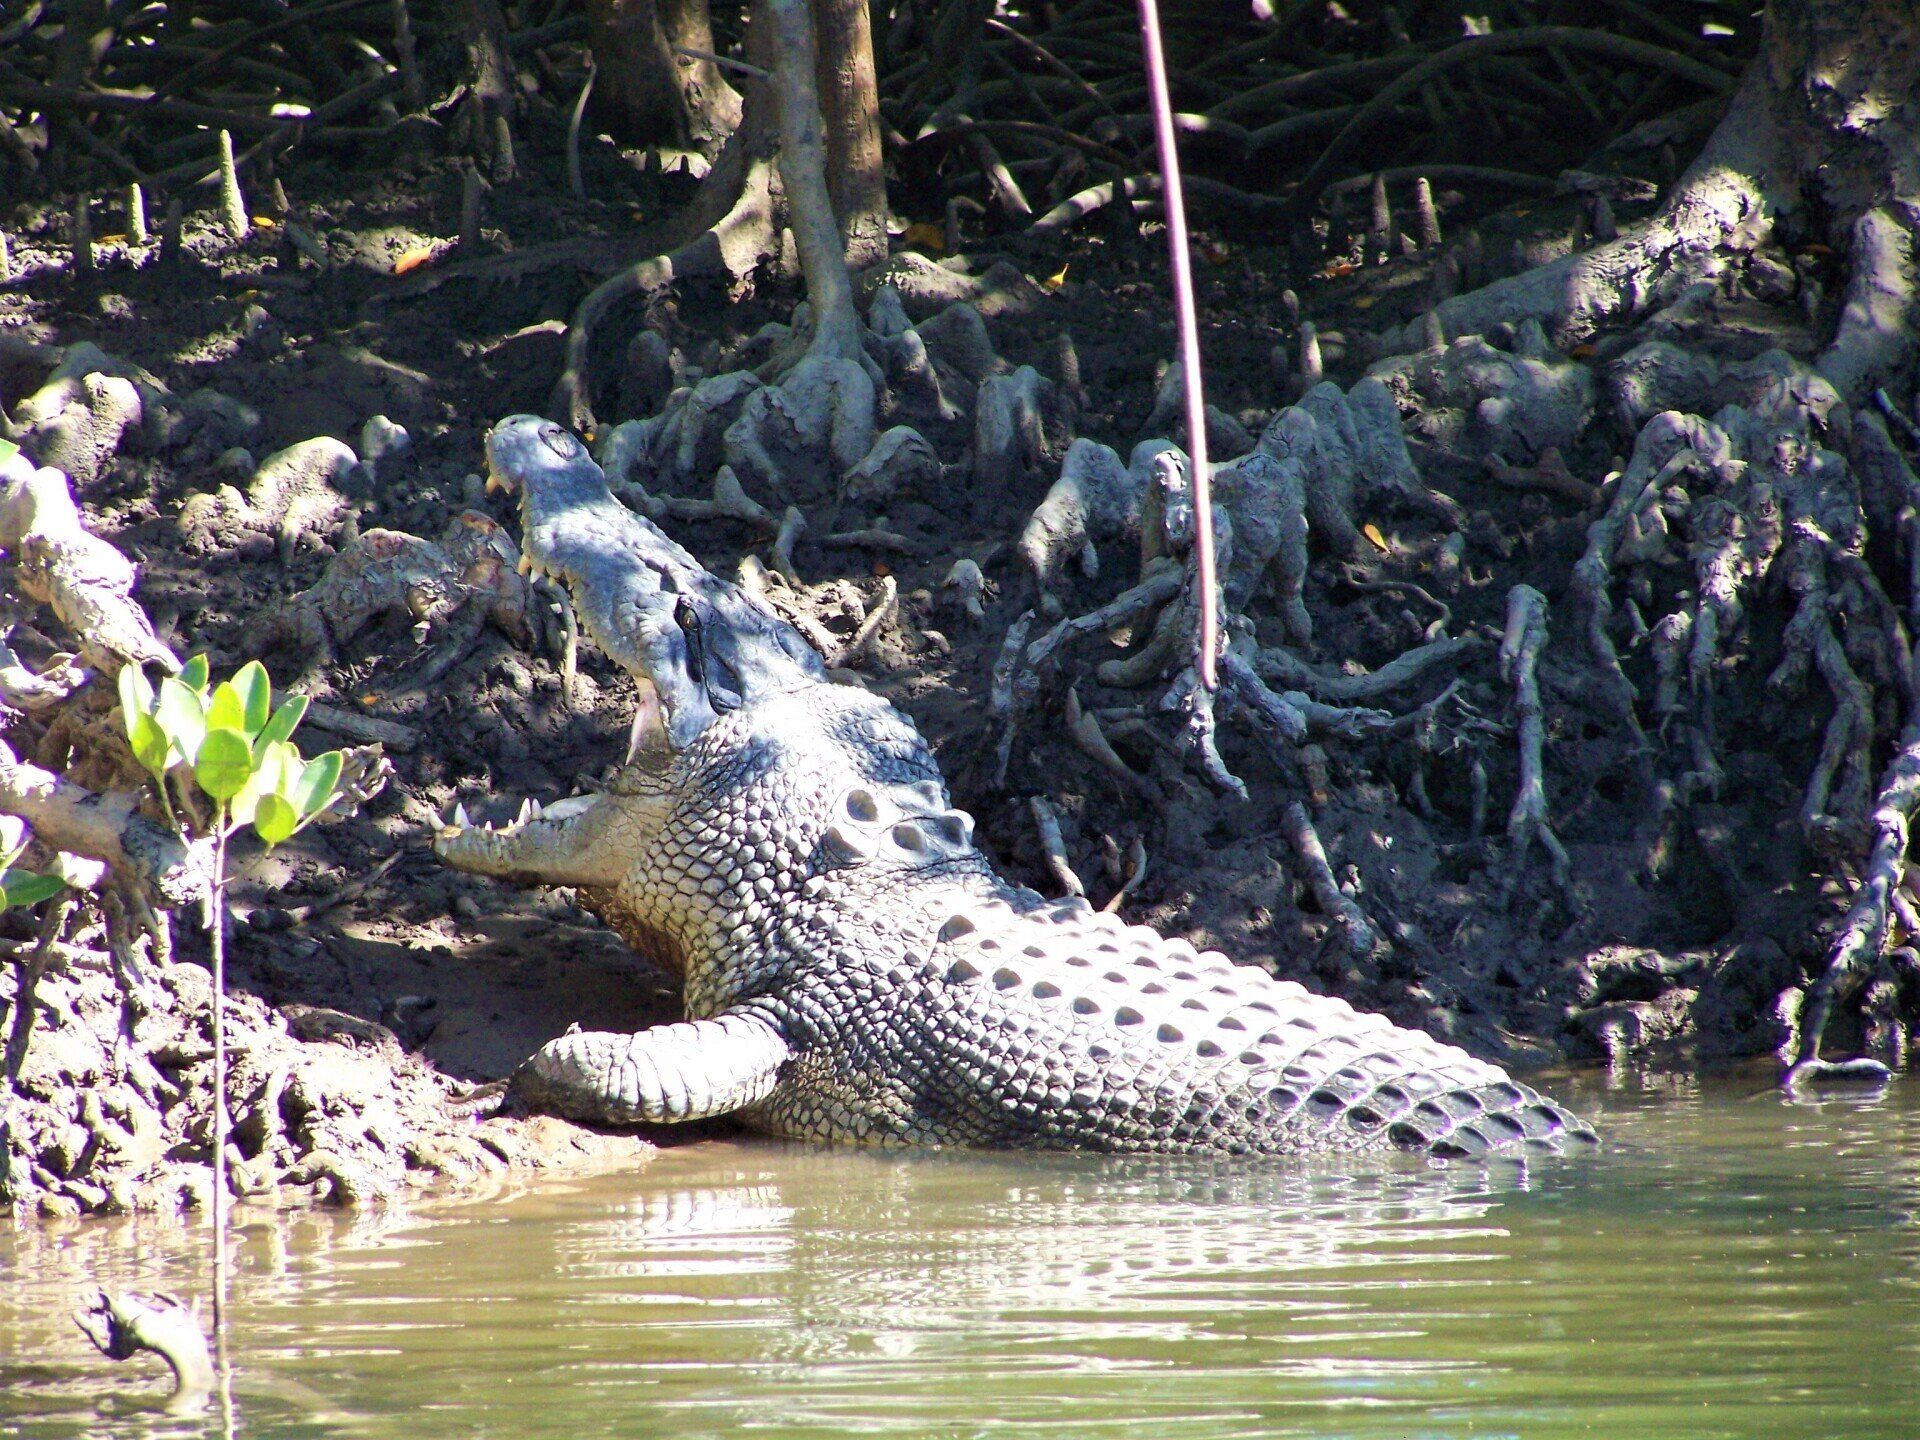 Croc wise in Queensland